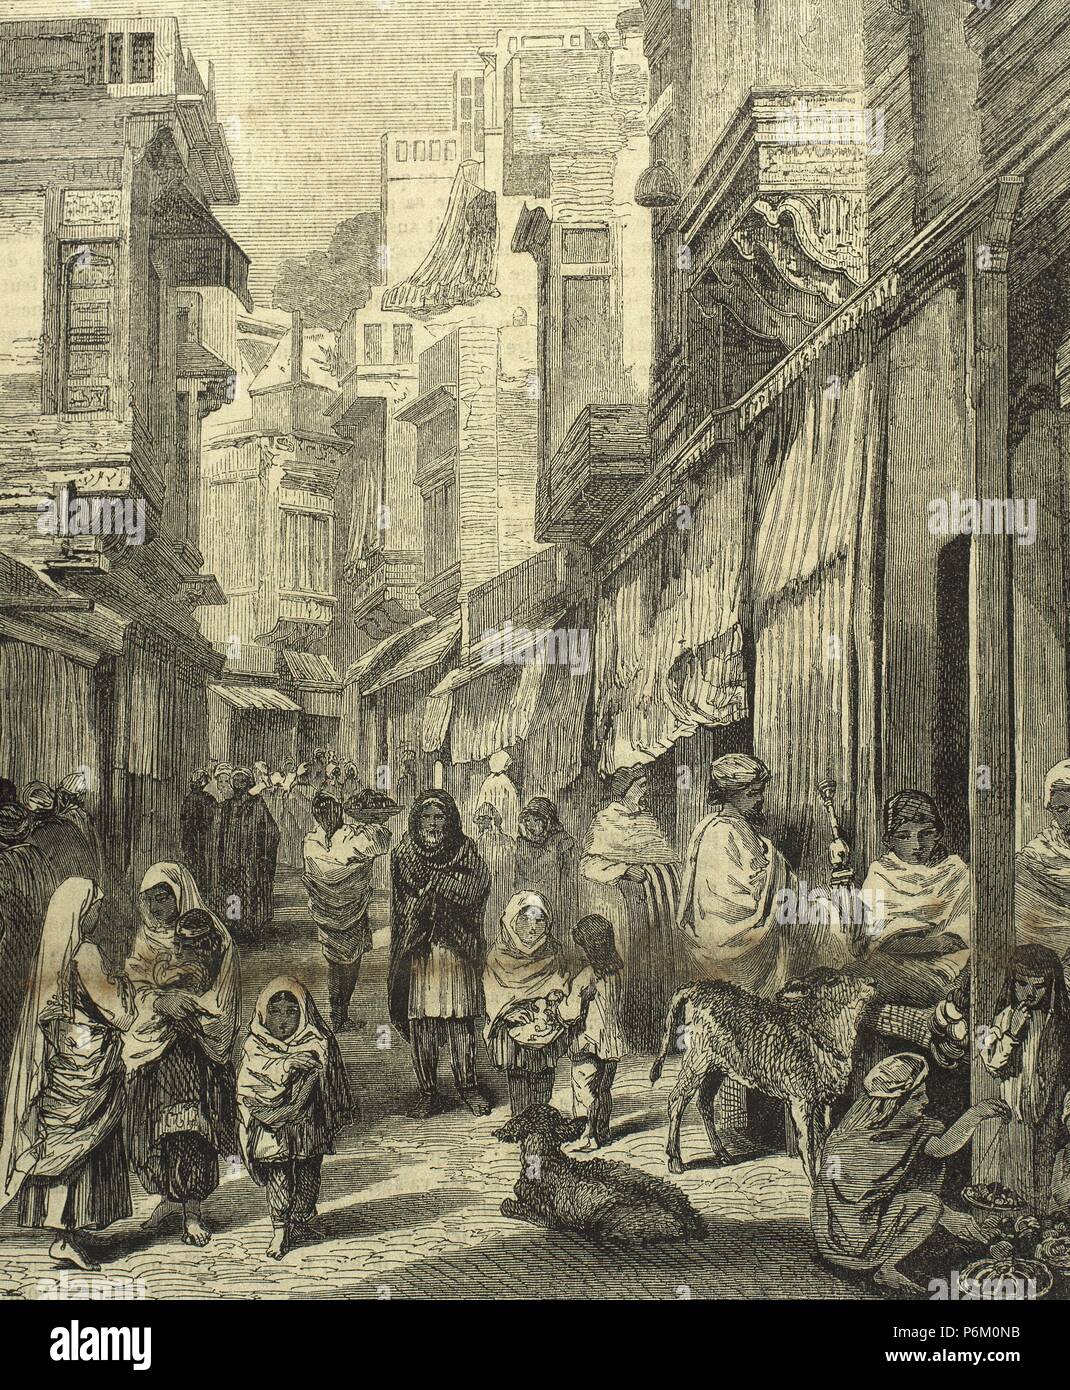 India. Varanasi. Street of the city. Daily life. 19th century. Engraving. Stock Photo